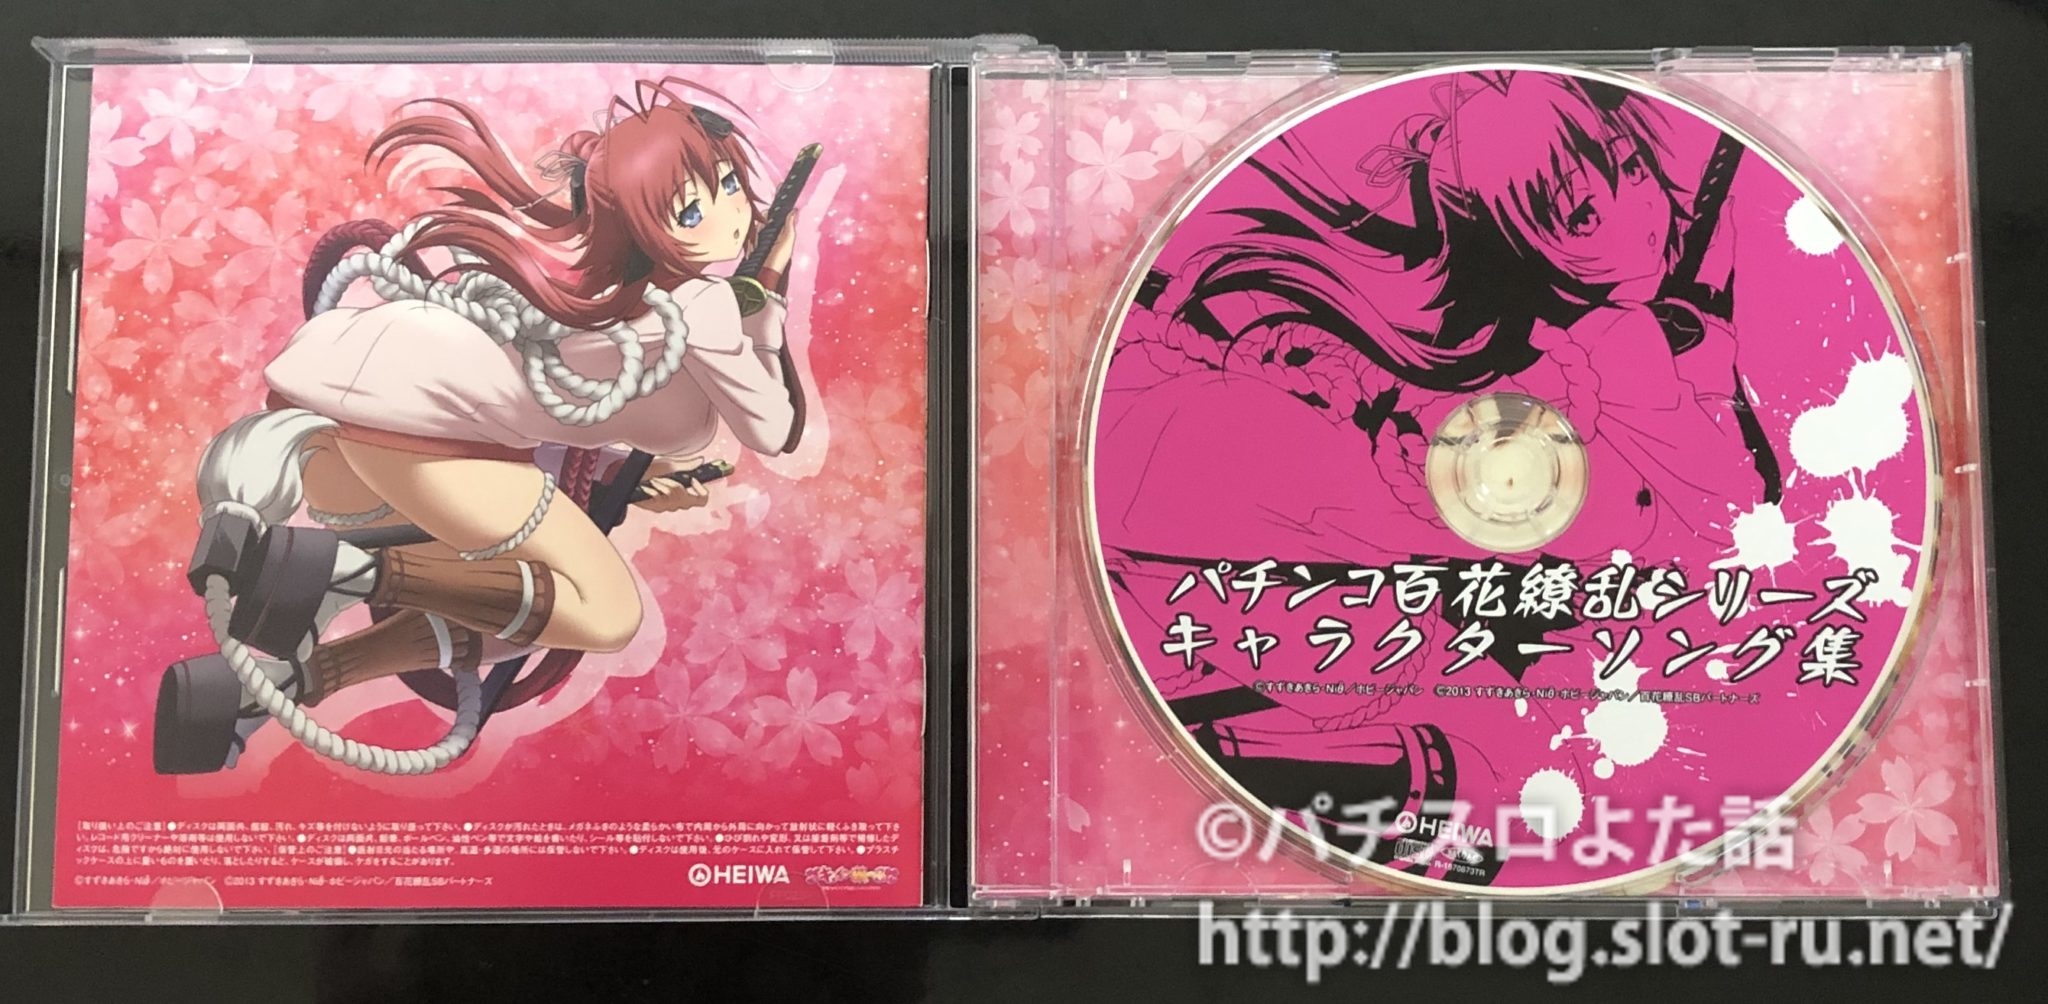 パチンコ百花繚乱シリーズキャラクターソング集CDを手に入れました 